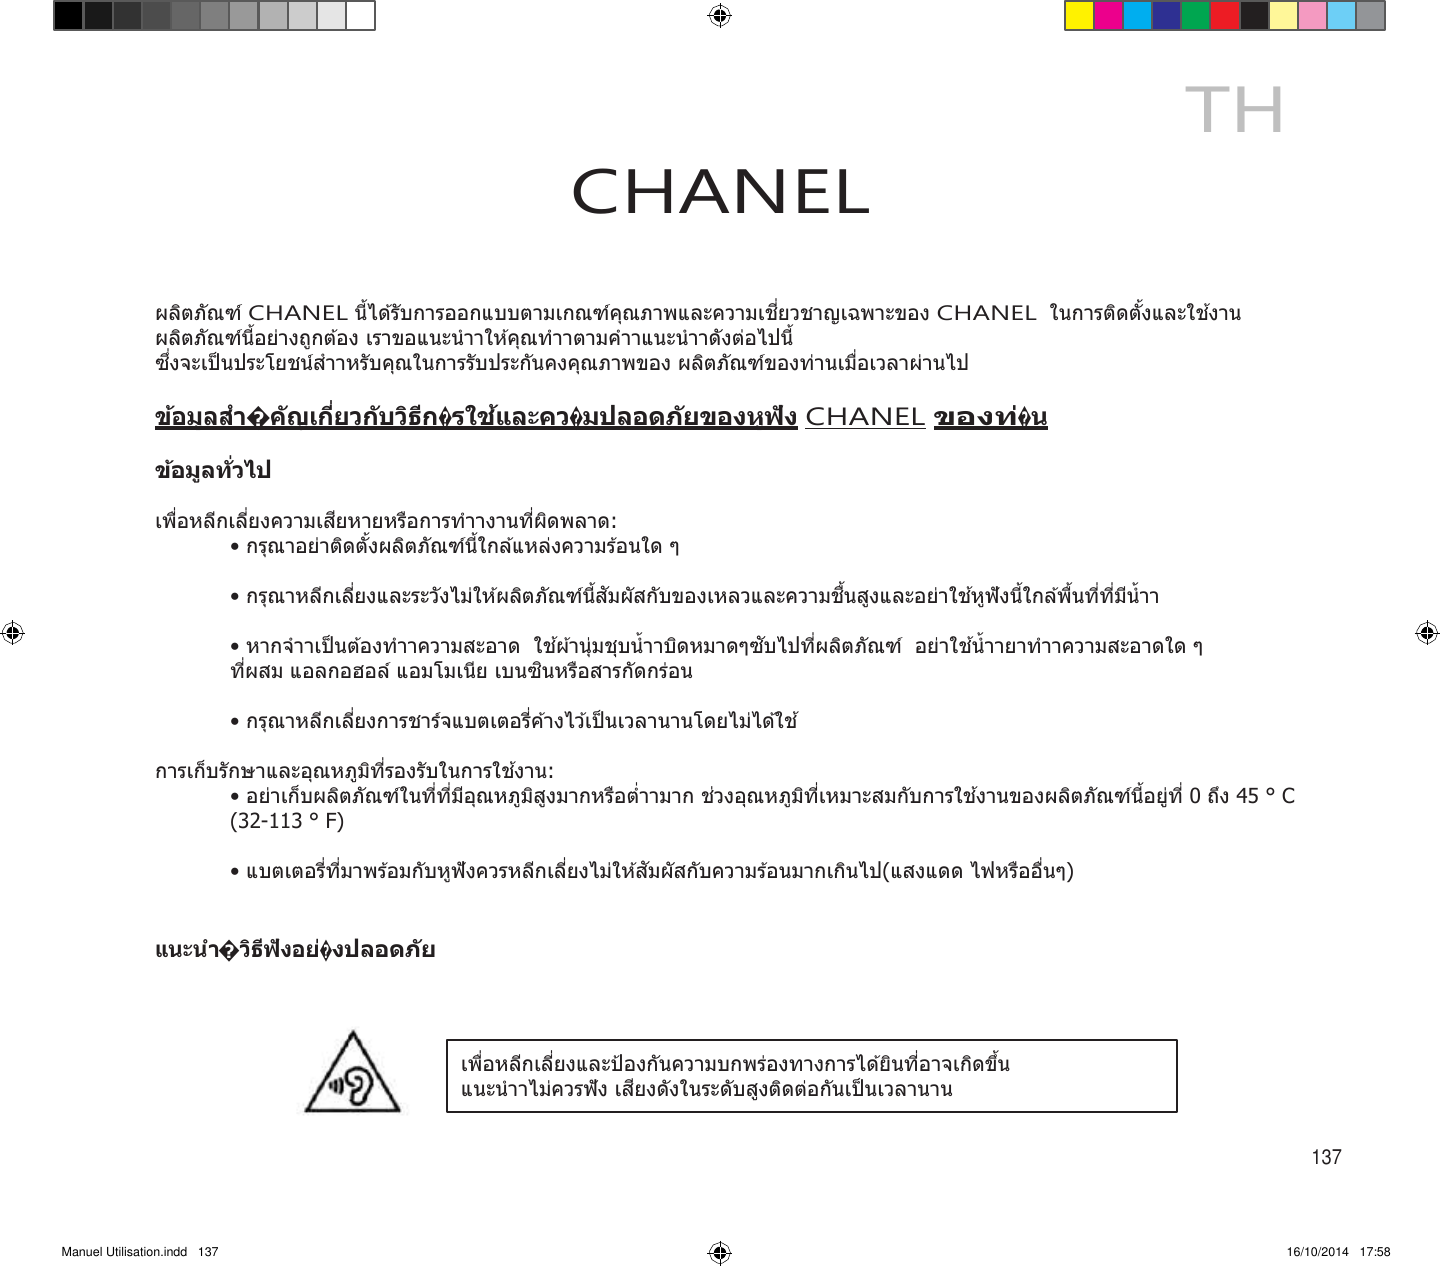 Manuel Utilisation.indd   137 16/10/2014   17:58     TH CHANEL    CHANEL  CHANEL        CHANEL                               ° C (32-113 ° F)                   137 